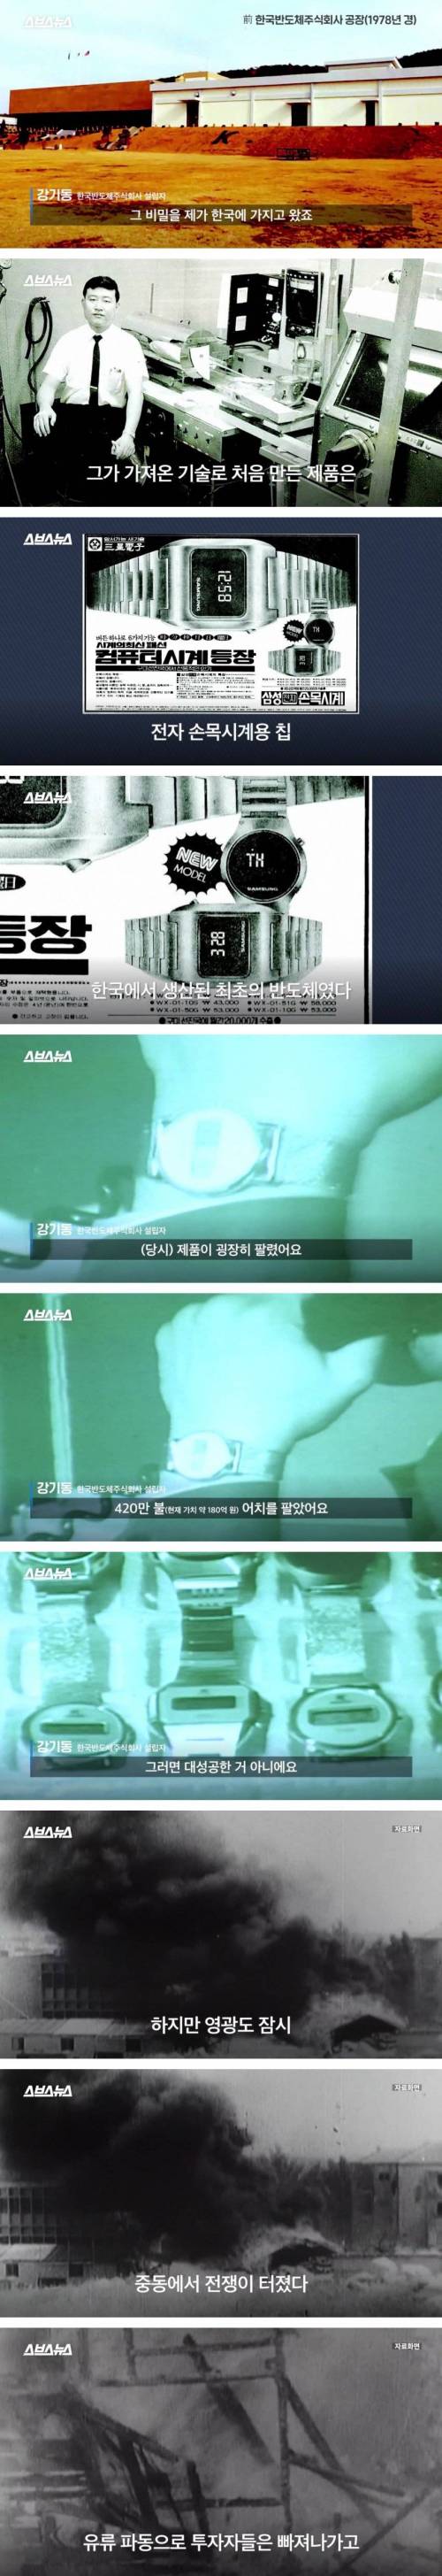 [스압] 한국 최초로 반도체를 만든 사람.jpg